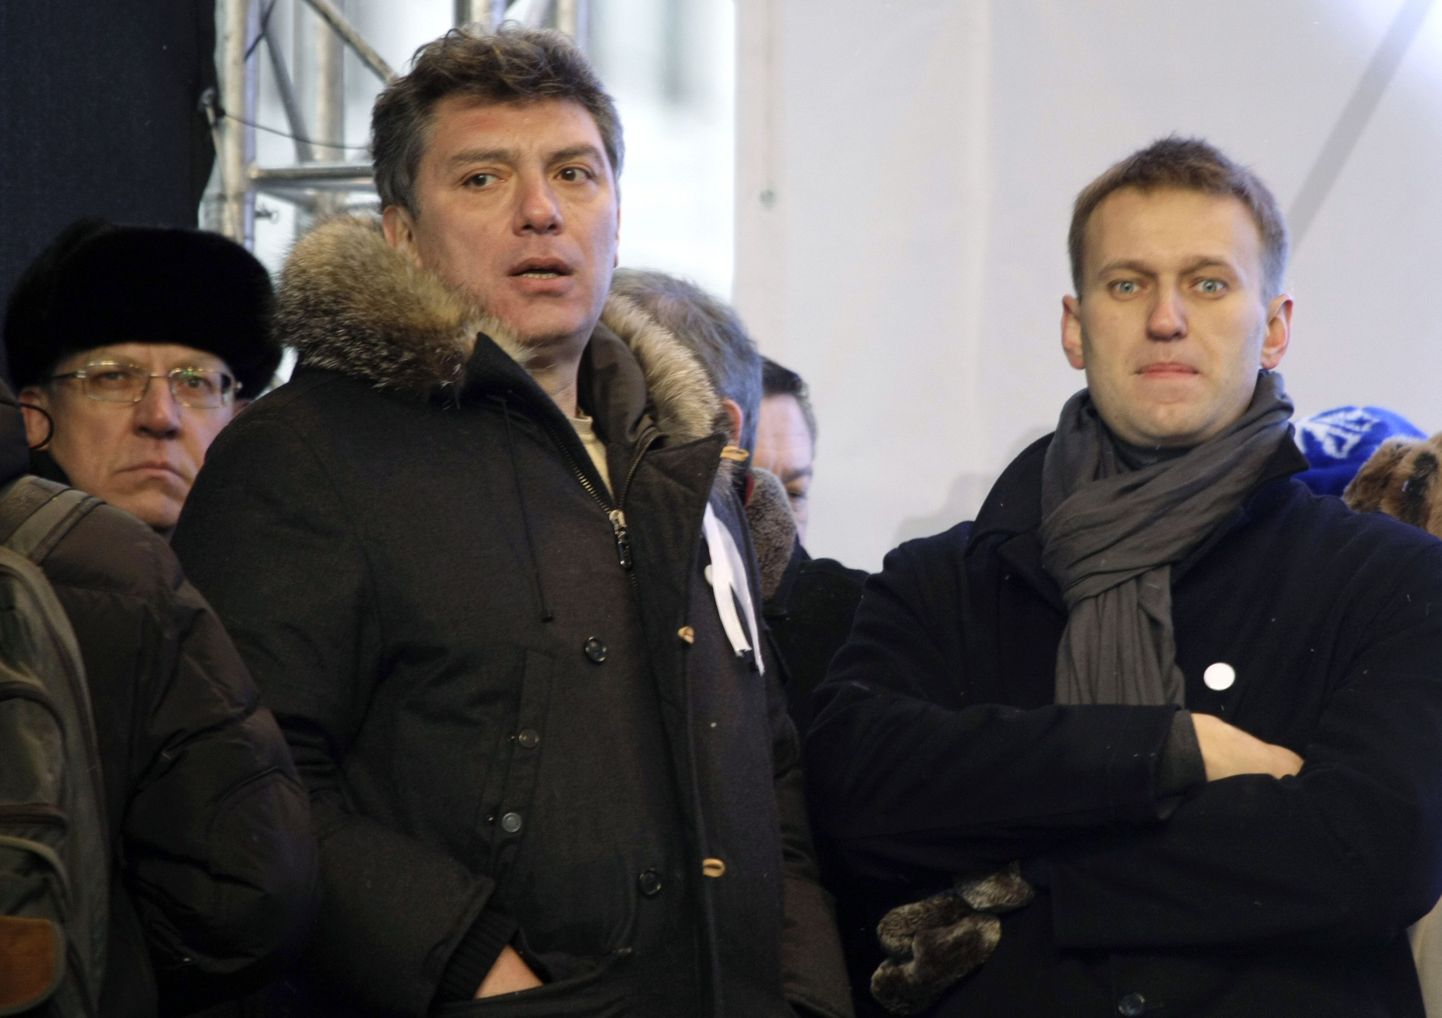 Boriss Nemtsov ja Aleksei Navalnõi (paremal) 2011. aastal tehtud fotol. Taga vasakul paistab endine rahandusminister Aleksei Kudrin.